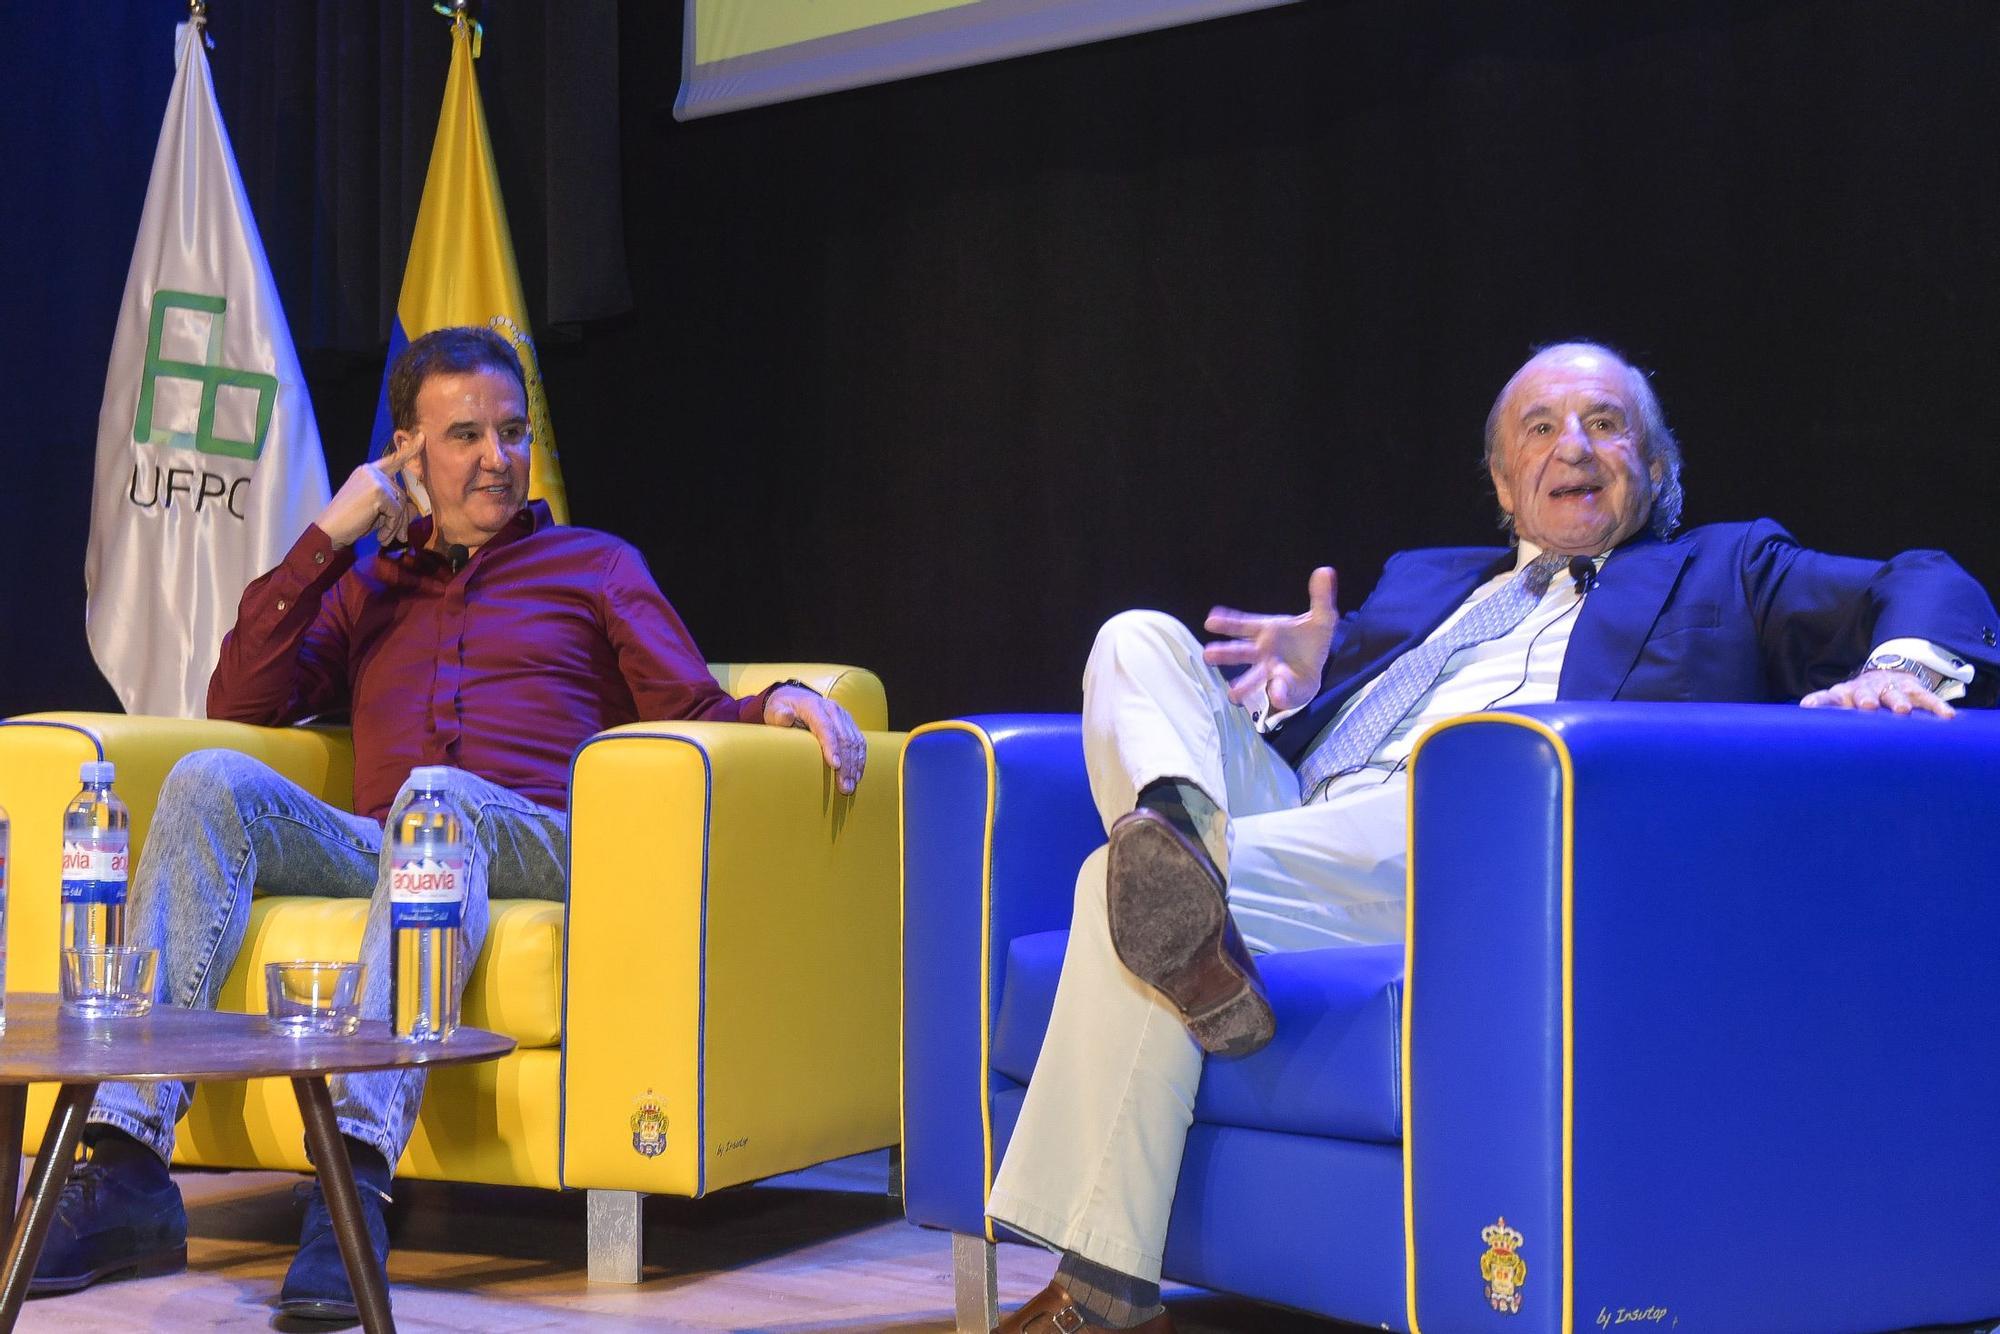 Coloquio 'El Periodismo Deportivo de ayer y hoy' con José Ramón de la Morena y José María García